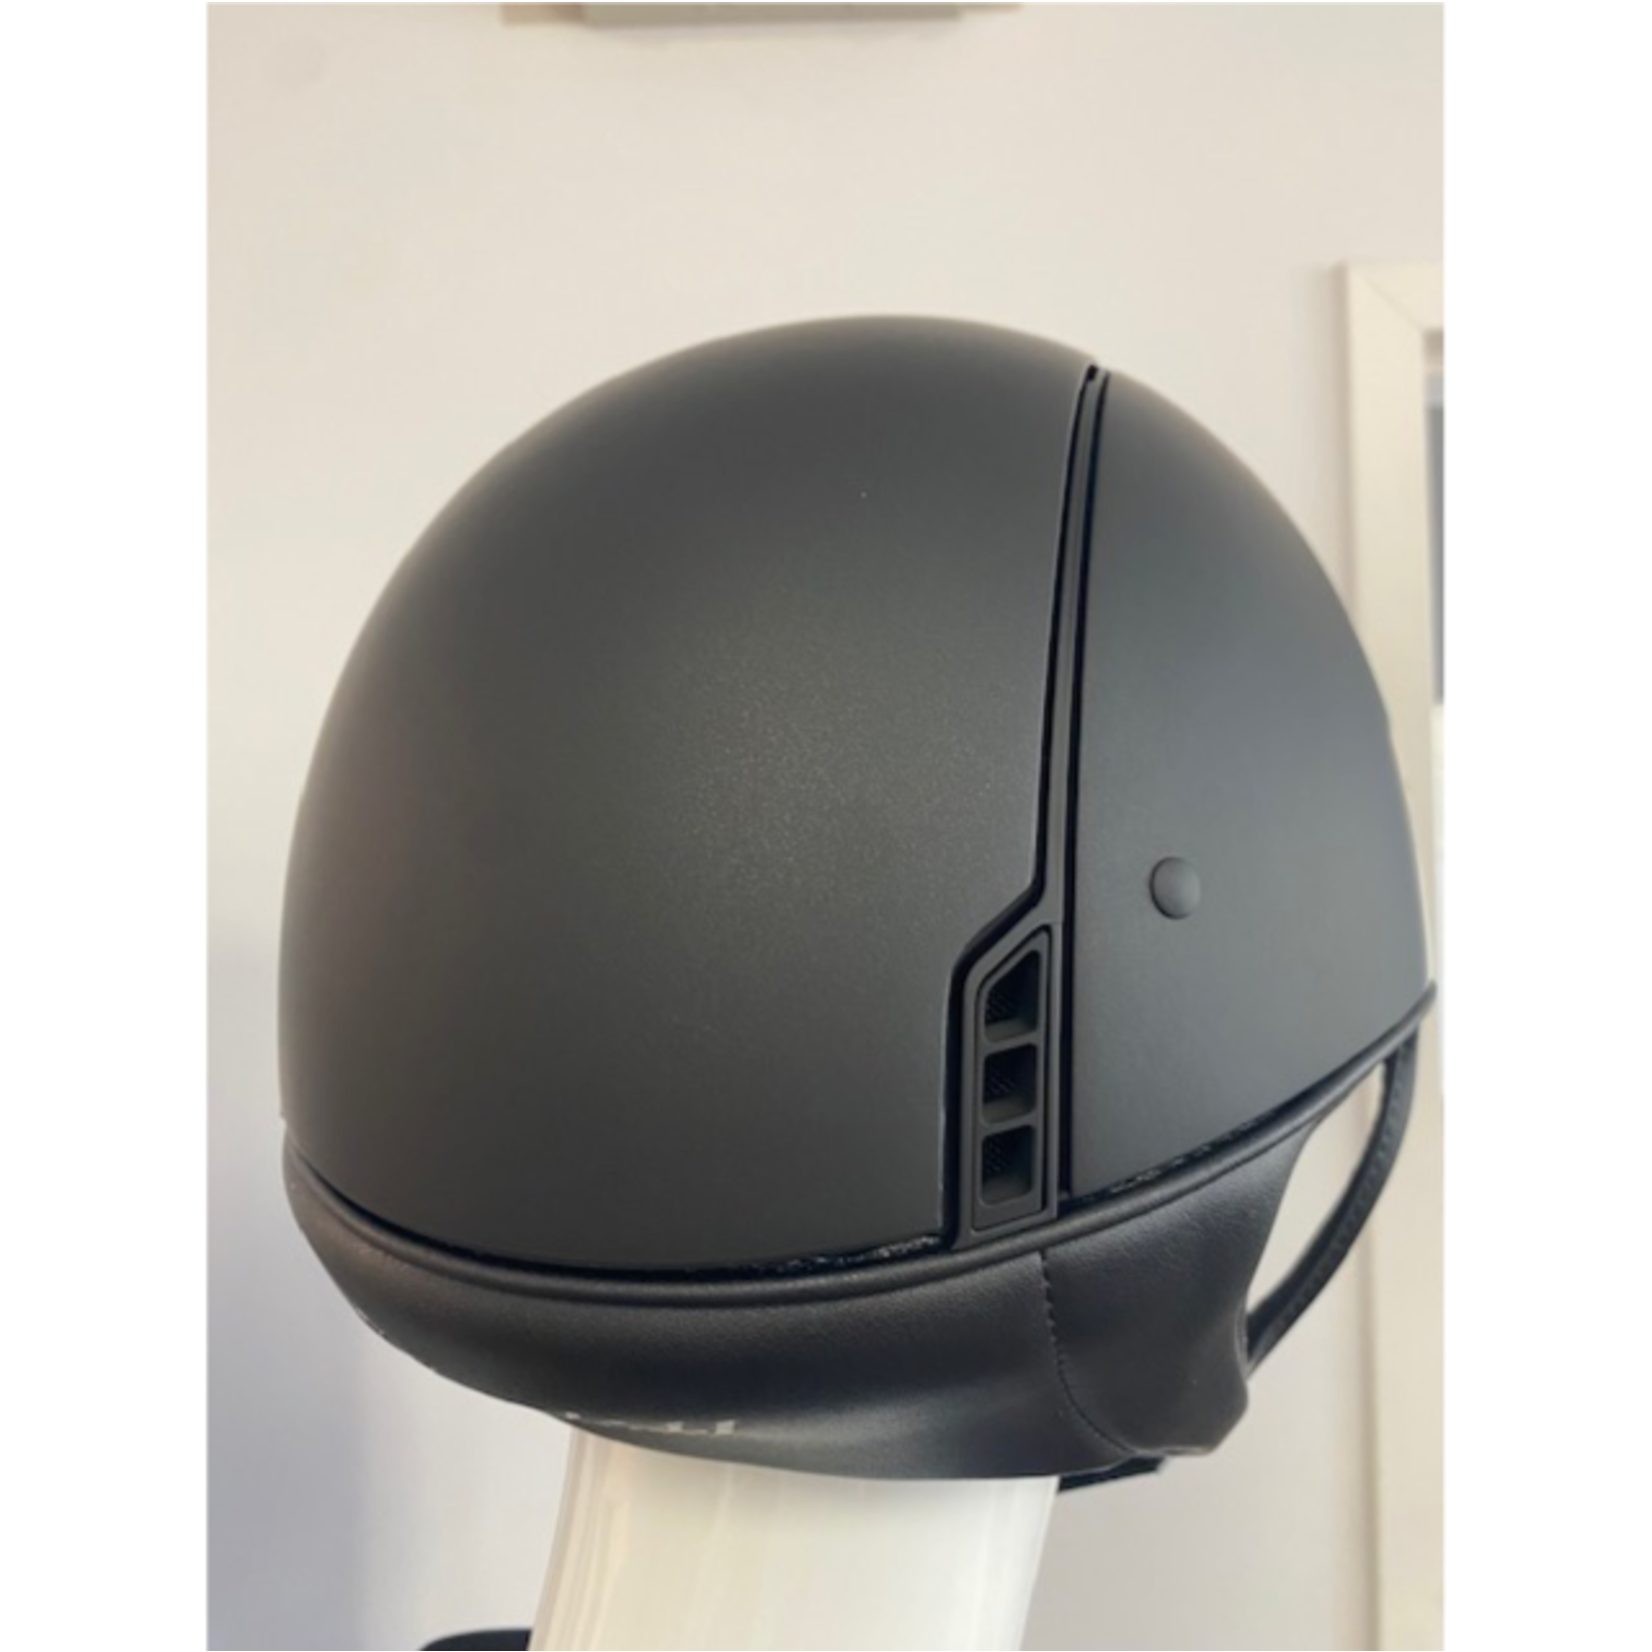 Samshield 1.0 Samshield Shadowmatt Dark Line Helmet w/ Tonal Matt Trim & Blazon